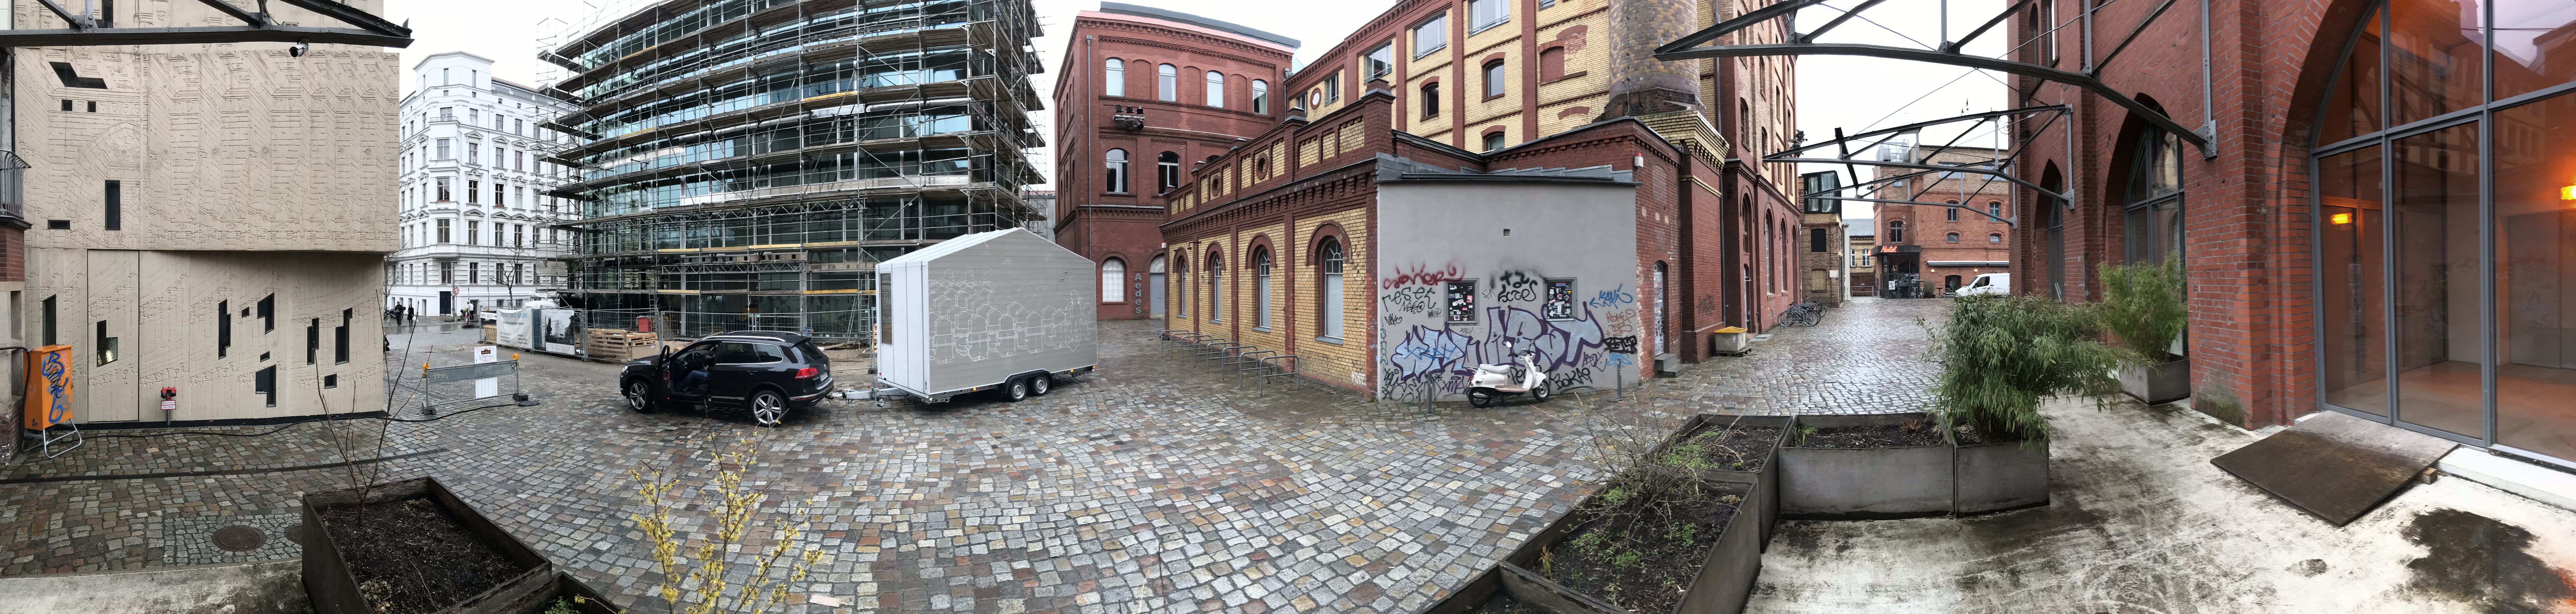 Tiny House Berlin